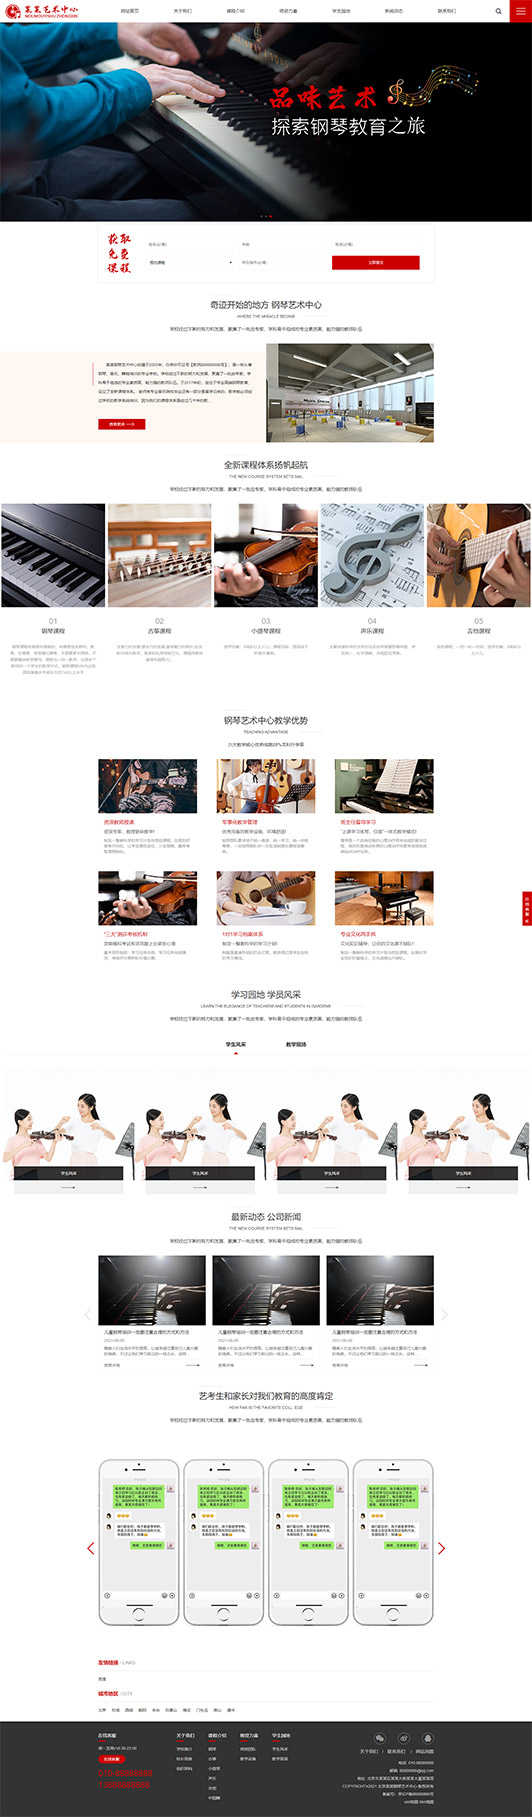 天门钢琴艺术培训公司响应式企业网站